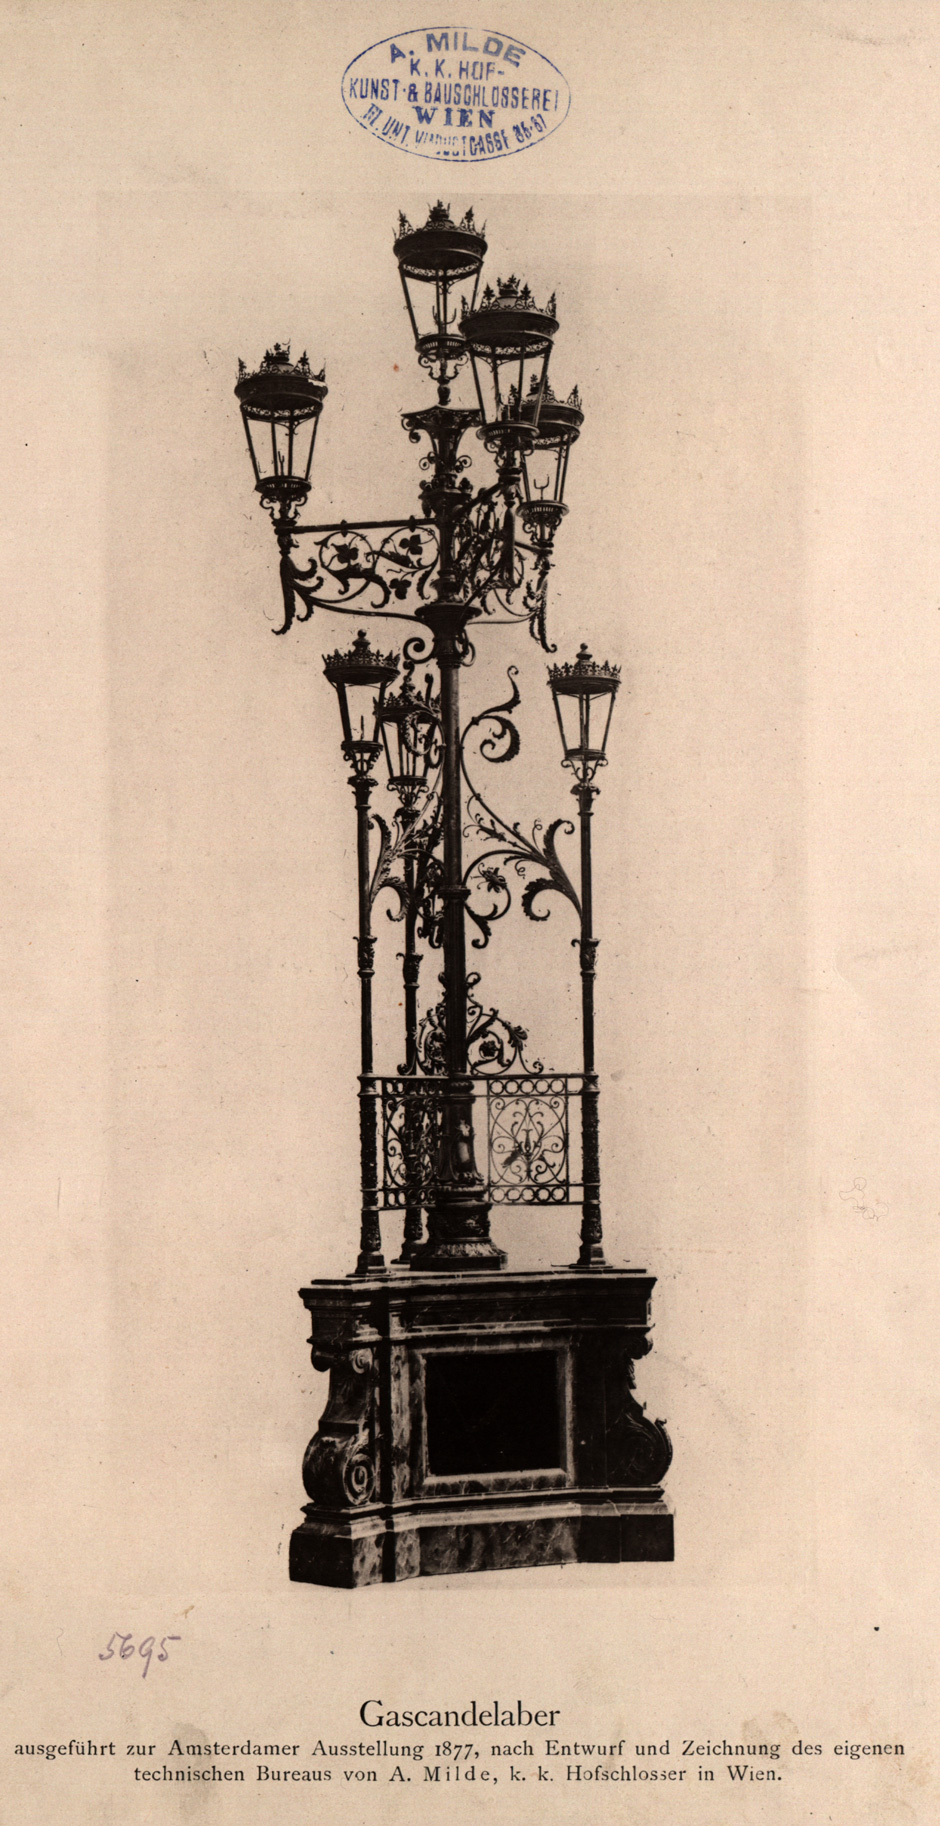 Gaskandelaber zur Amsterdamer Ausstellung 1877